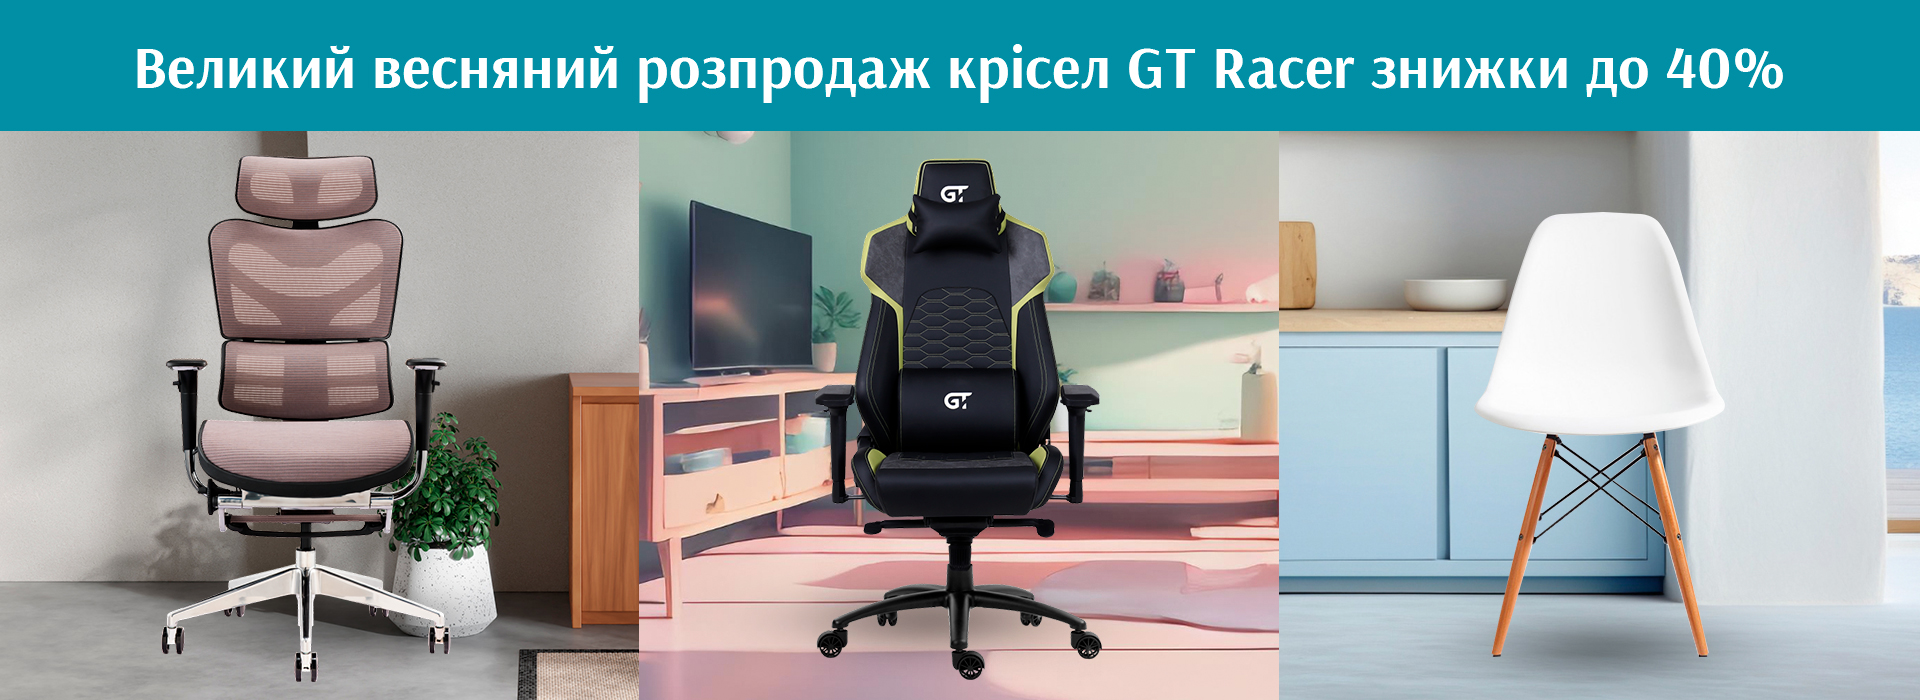 Великий весняний розпродаж крісел GT Racer